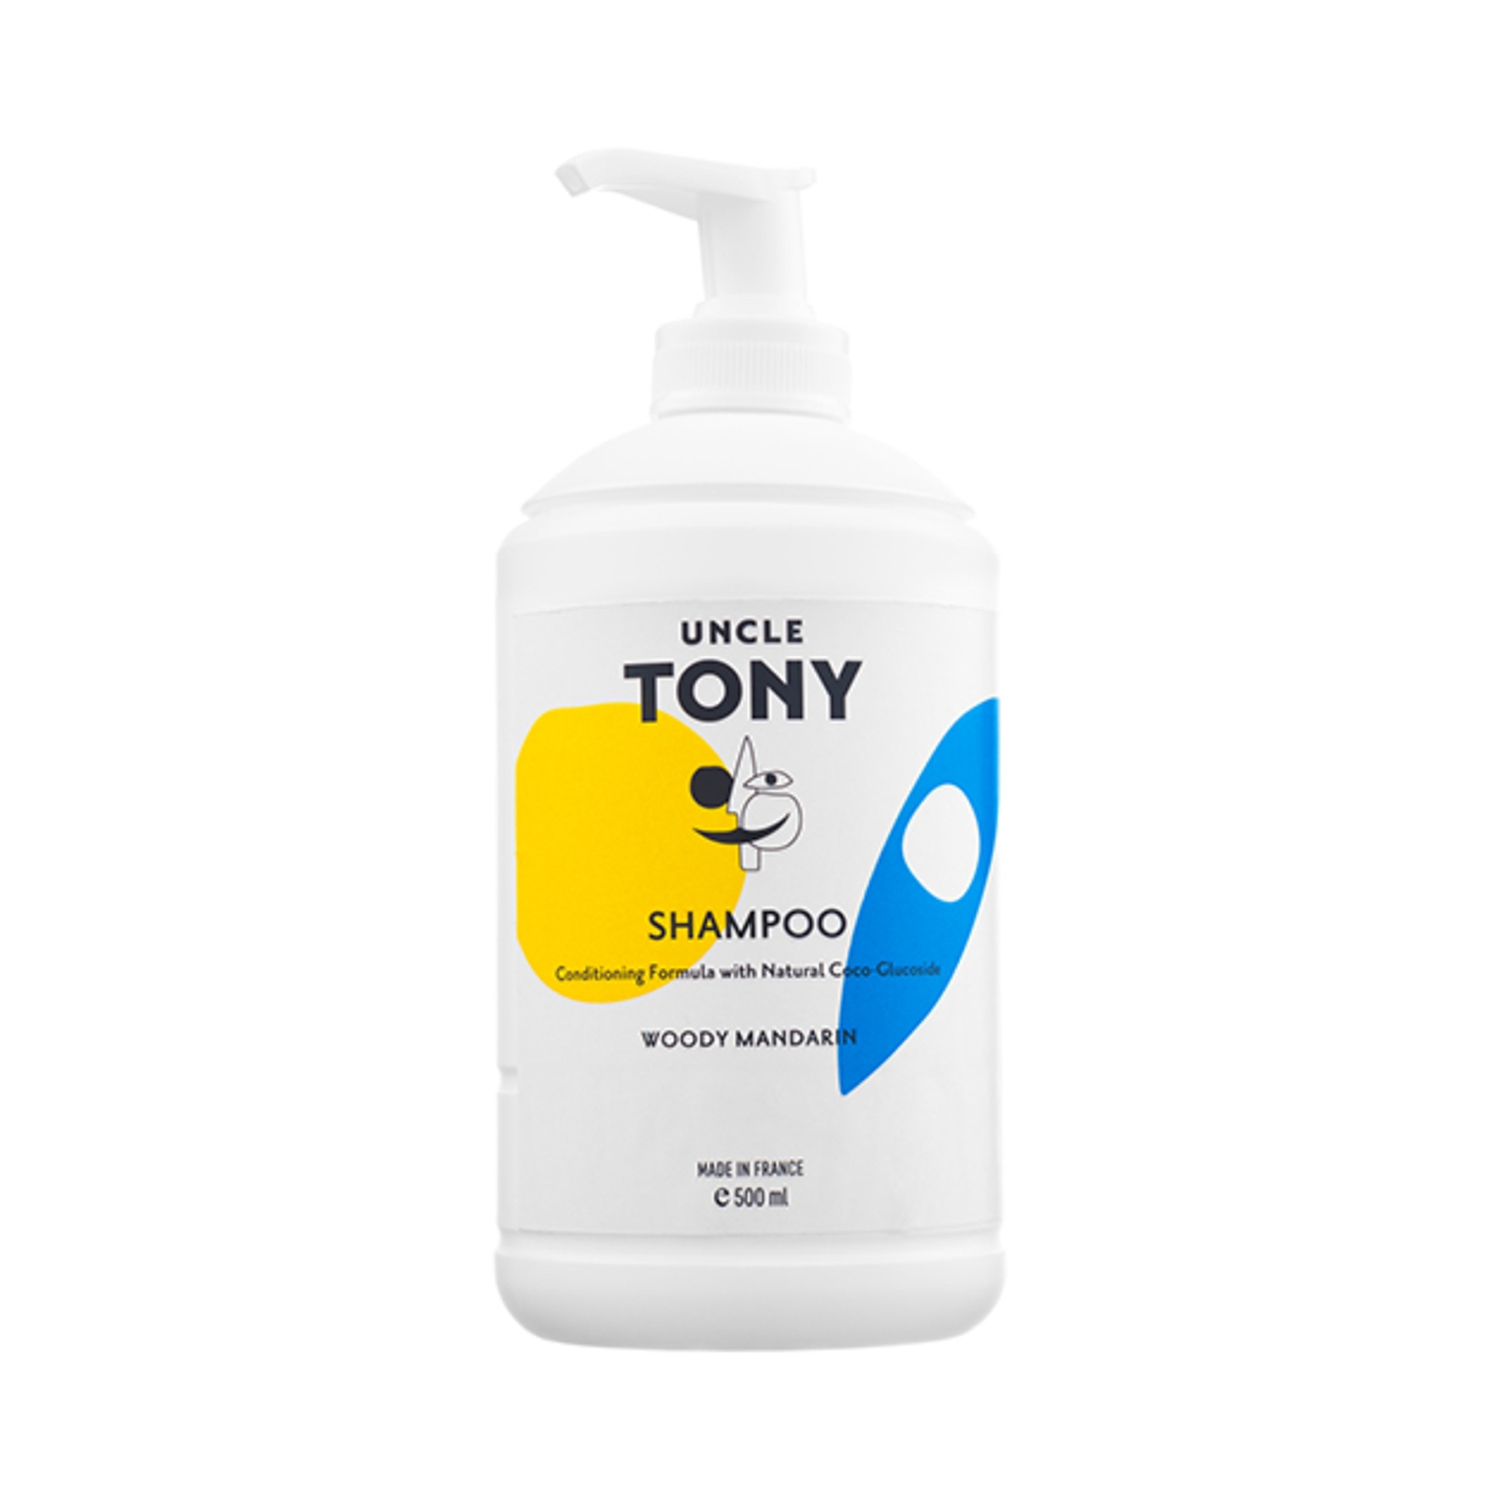 Uncle Tony Hair Shampoo (500ml)